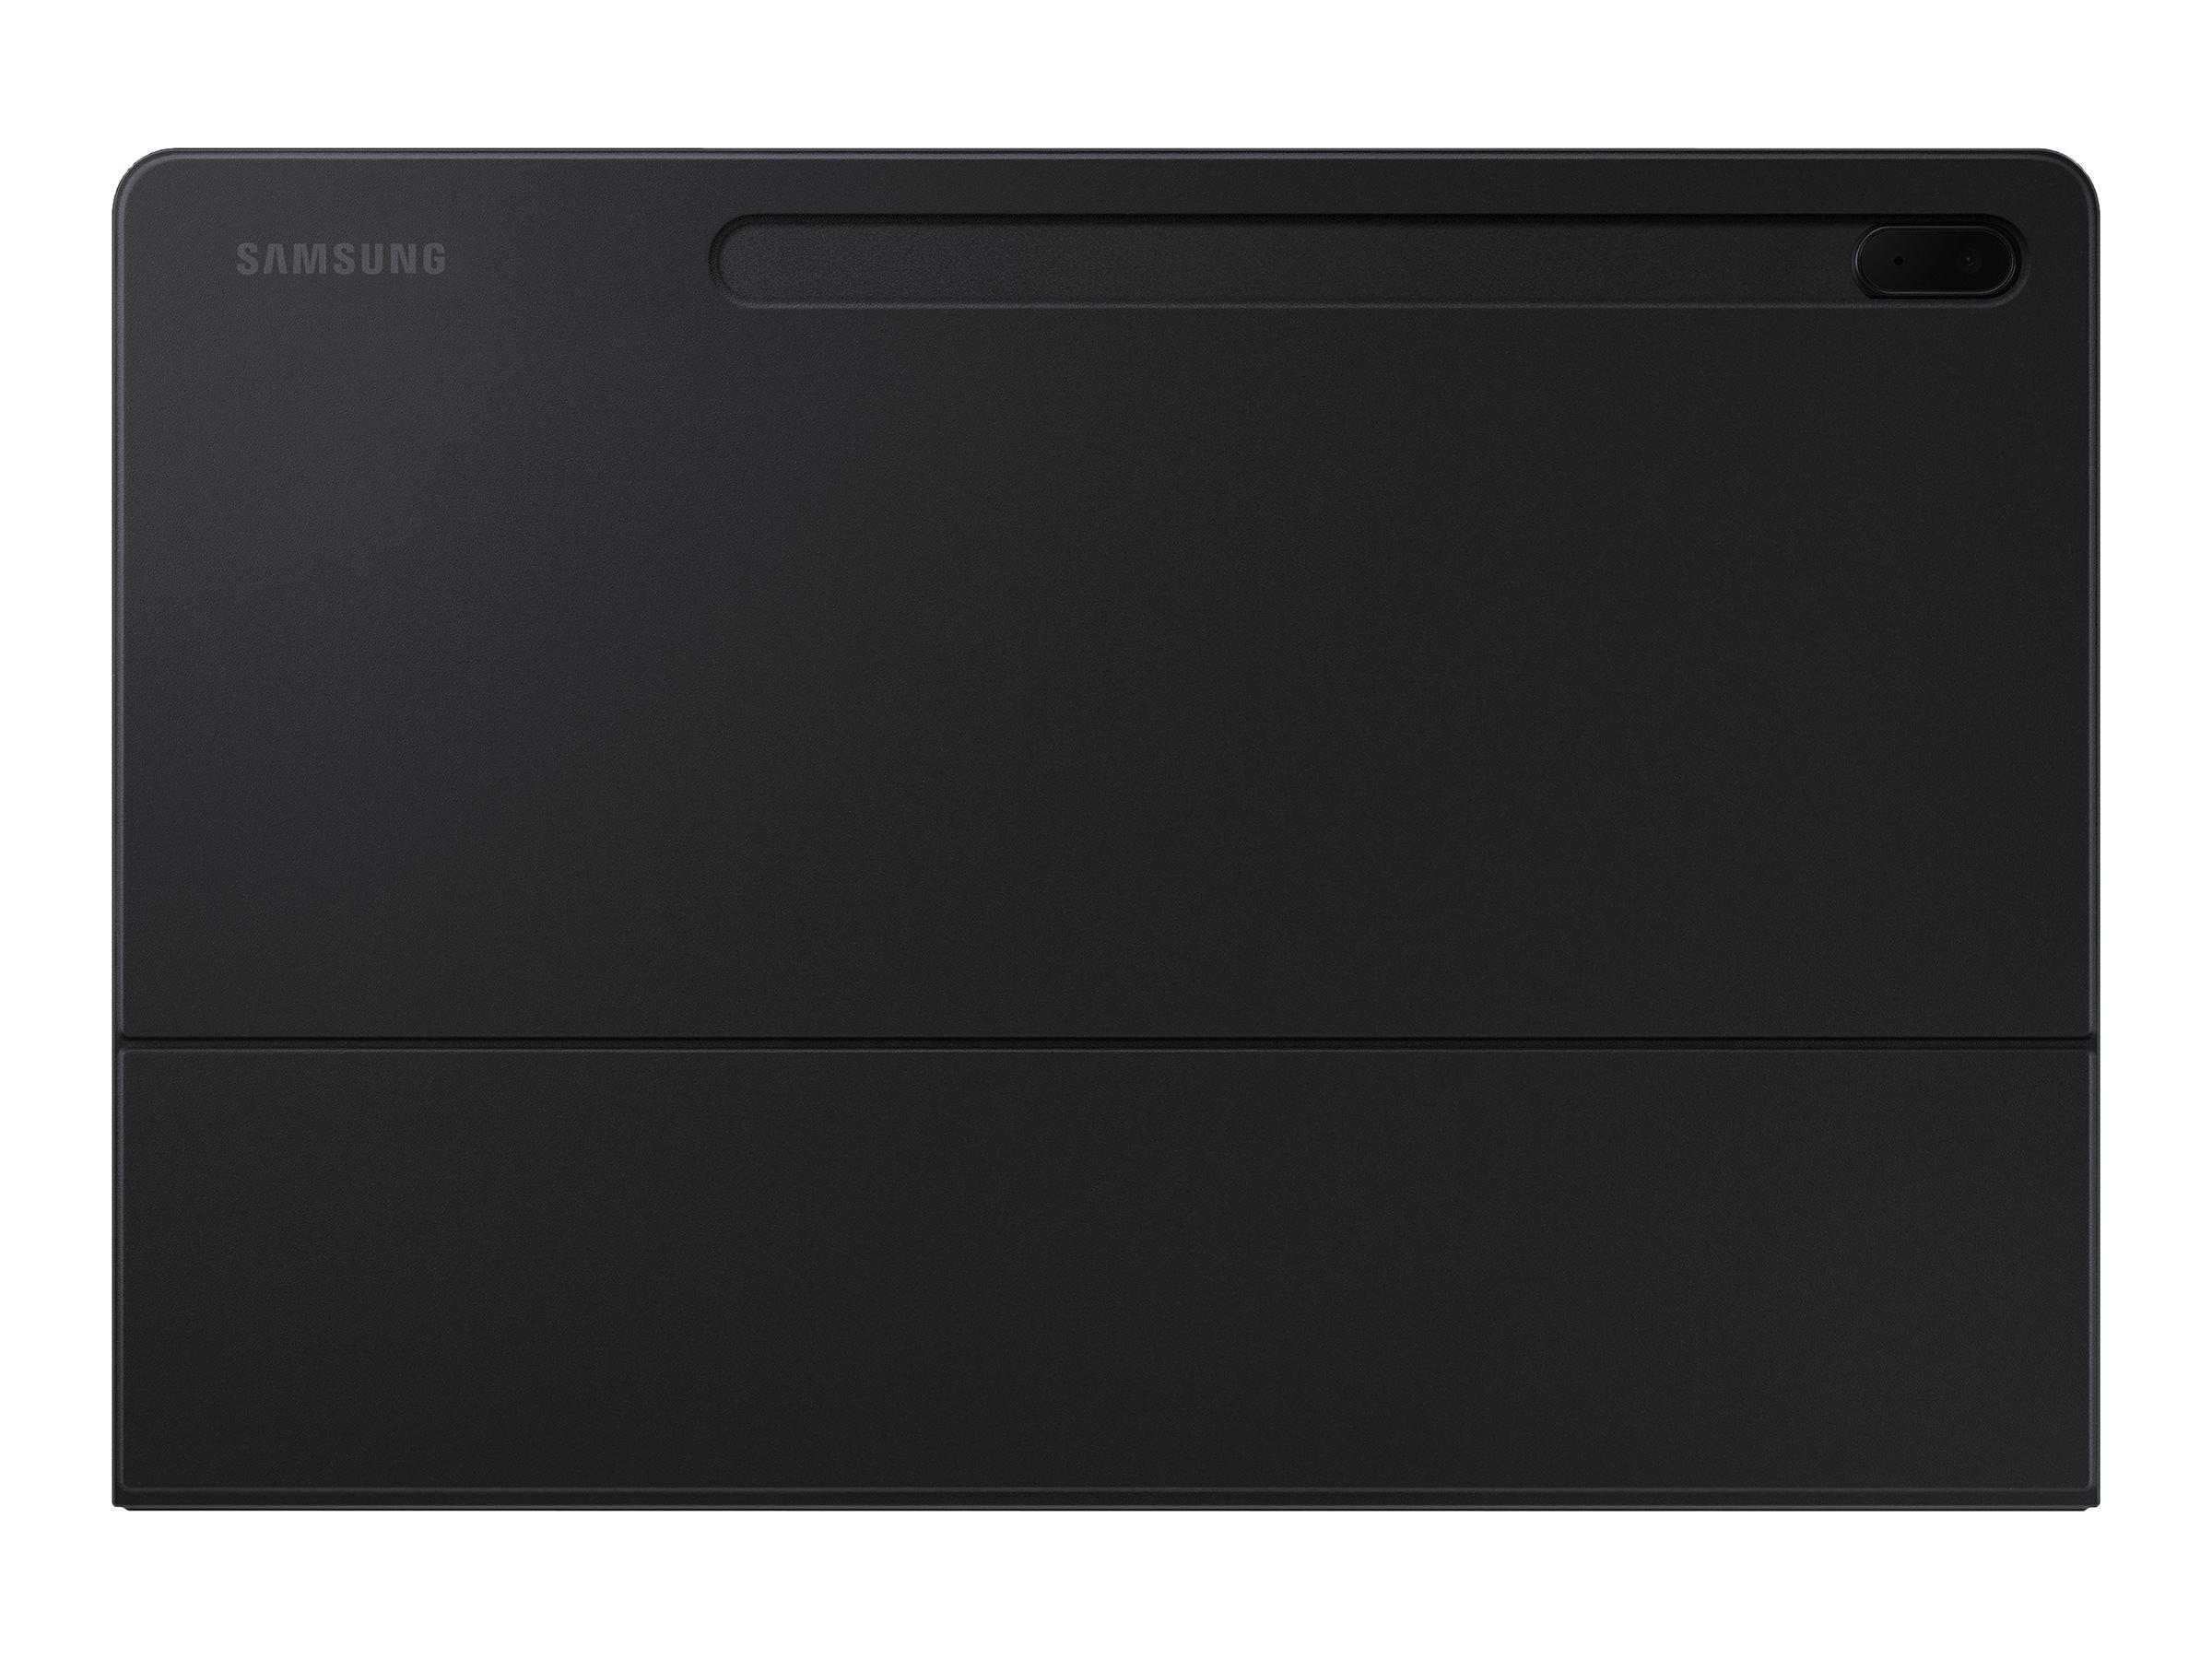 Samsung EF-DT730 - Clavier et étui (couverture de livre) - POGO pin - noir clavier, noir étui - pour Galaxy Tab S7 FE, Tab S7+ - EF-DT730BBEGFR - Claviers